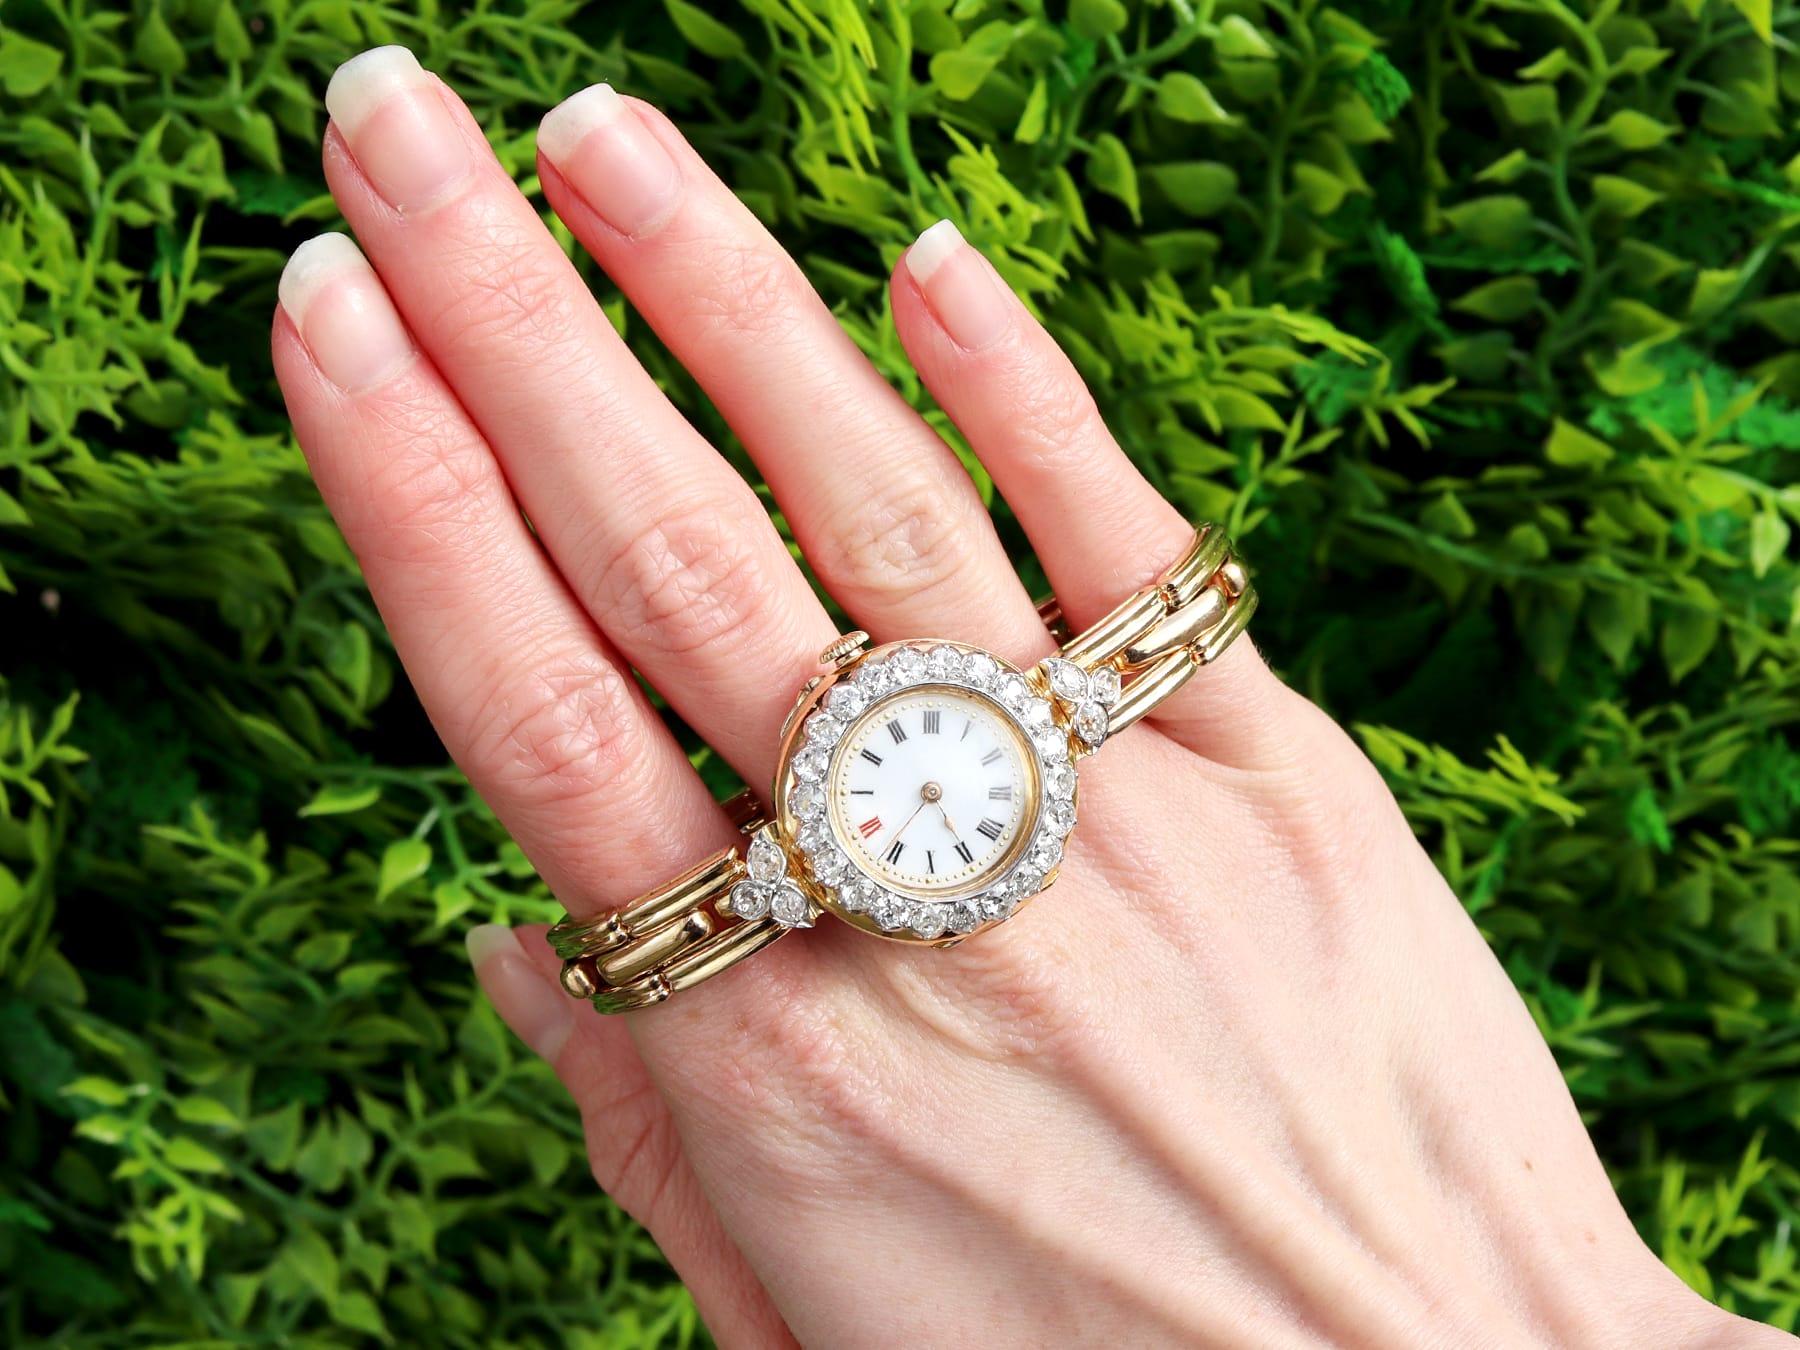 Eine atemberaubende, feine und beeindruckende antike Uhr mit 2,75 Karat Diamanten und 18 Karat Gelbgold und Platin; Teil unserer vielfältigen Diamantuhrenkollektionen.

Diese atemberaubende antike Uhr ist aus 18 Karat Gelbgold mit Platinfassung